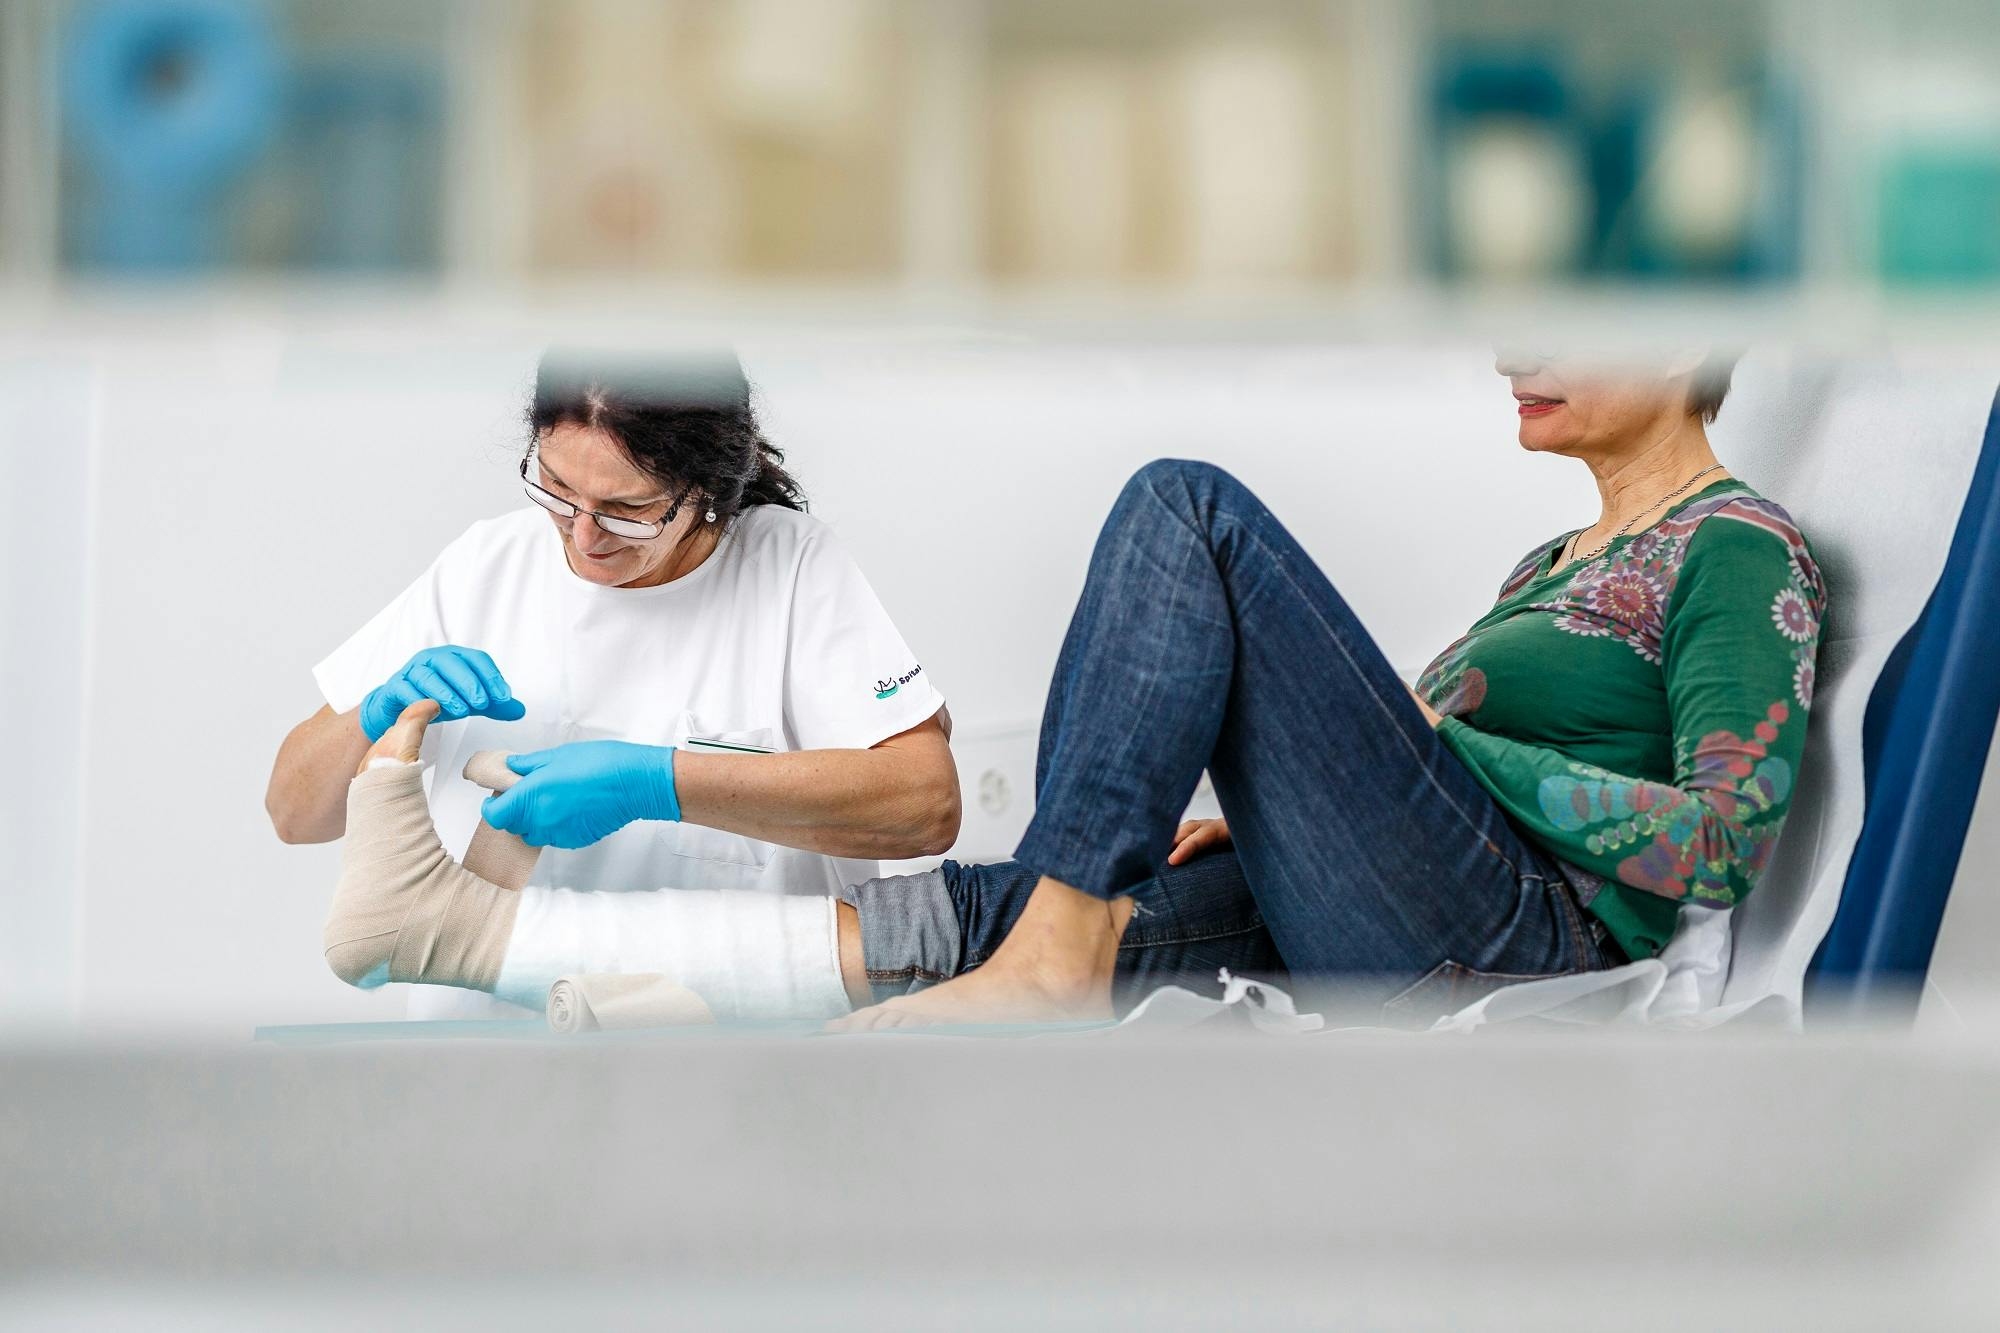 Zwei Personen sitzen auf dem Boden, wobei die eine Person der anderen eine Fußpflege gibt.